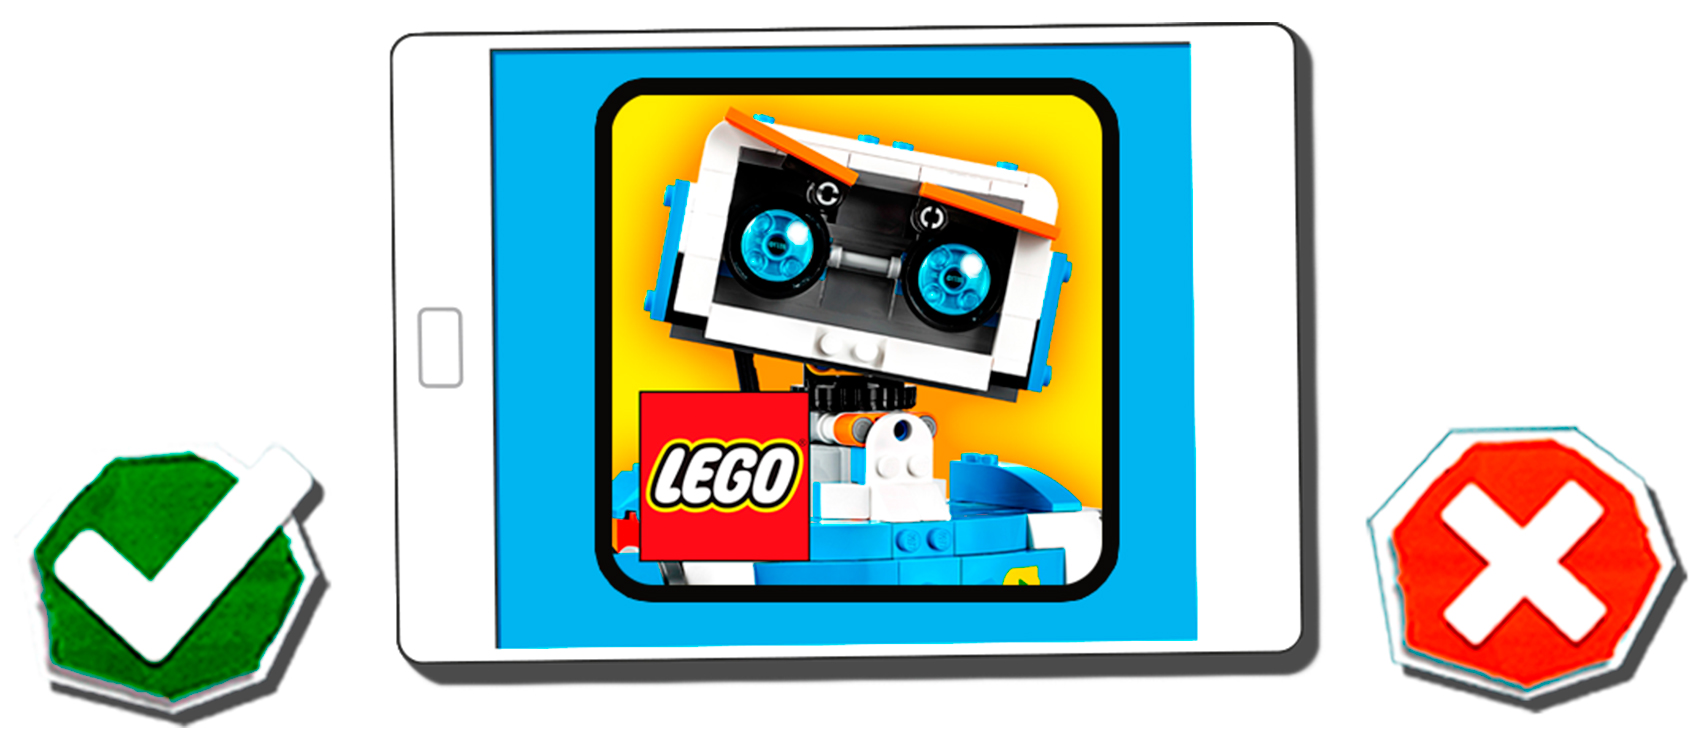 Una de las acciones que traer la asociacin entre Lego y la operadora china es la puesta en marcha Lego Boost, un programa que permite...